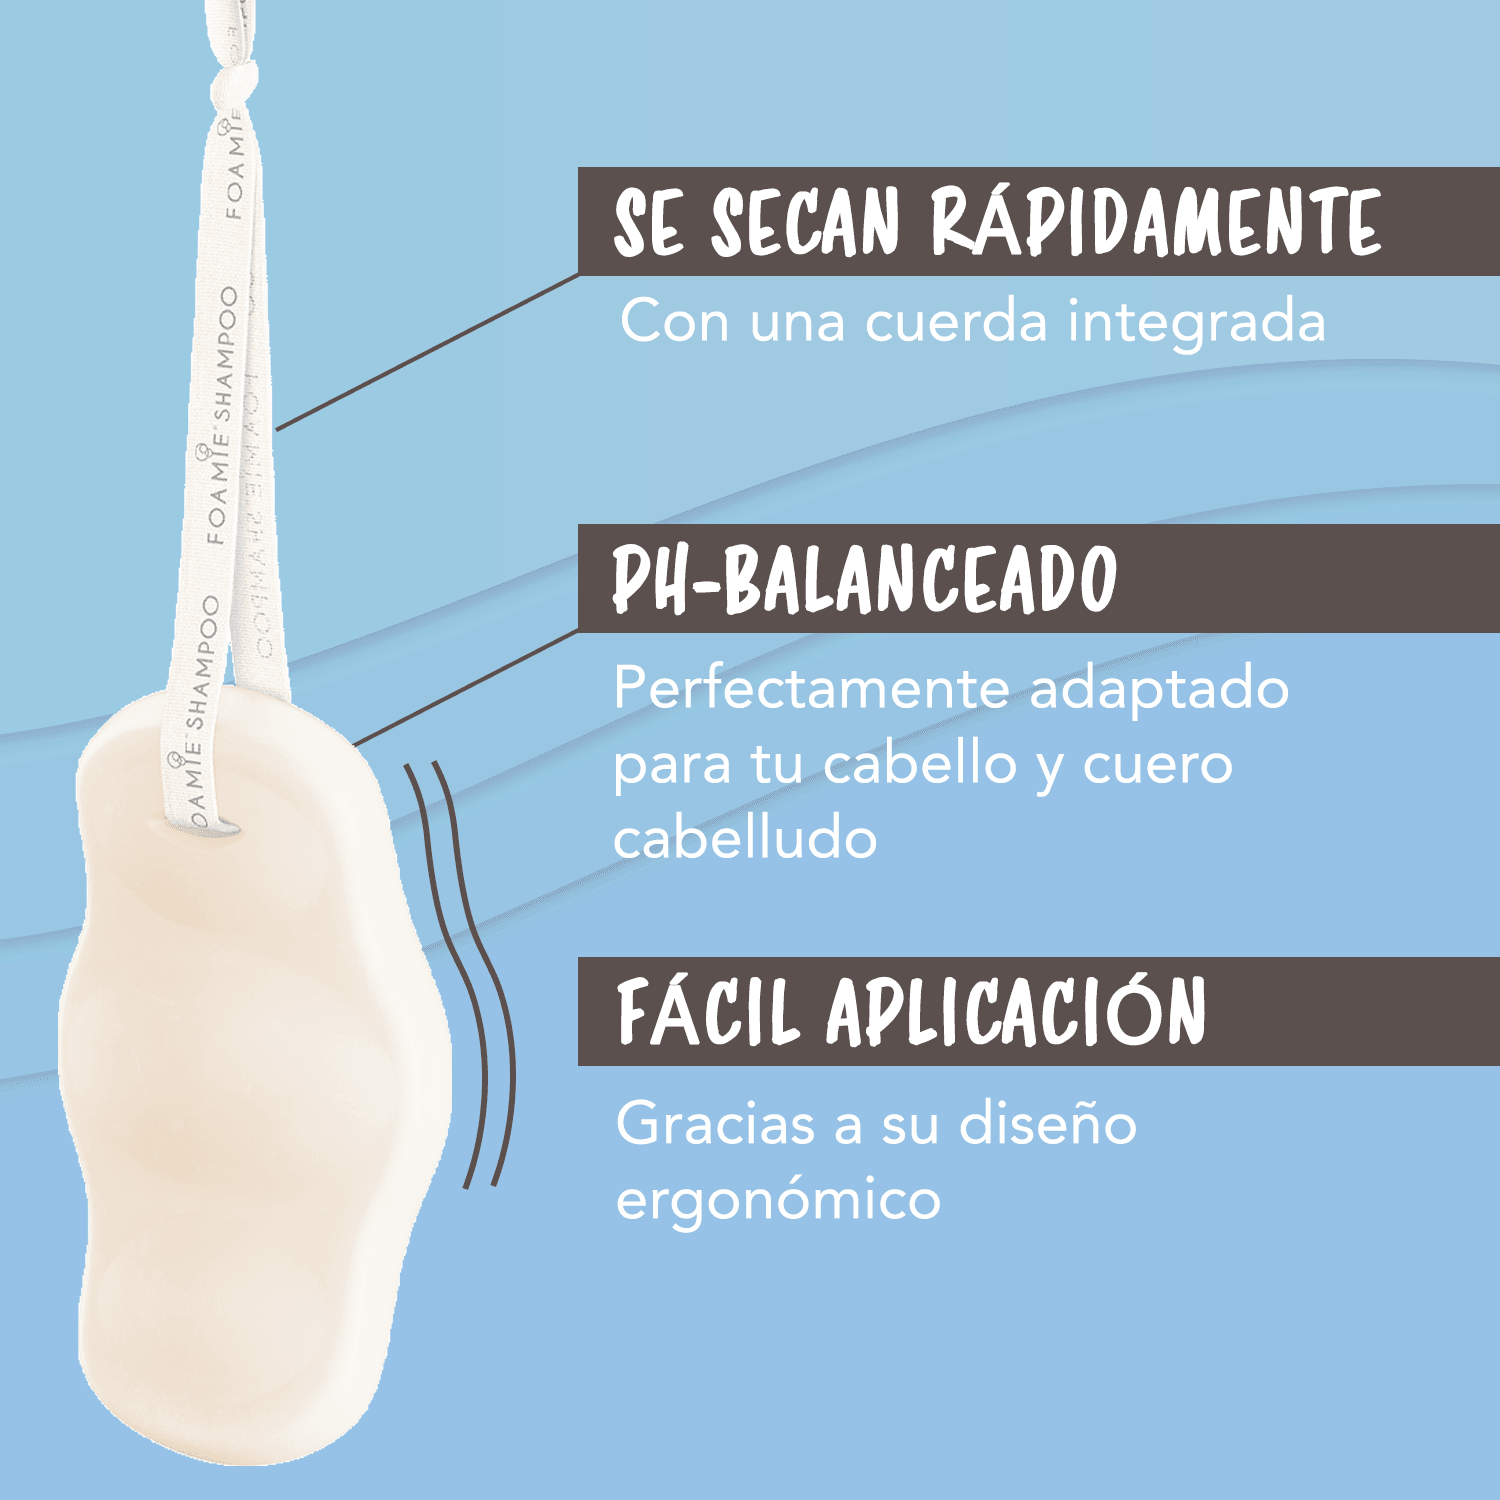 Shampoo de Coco y Jabonera sustentable